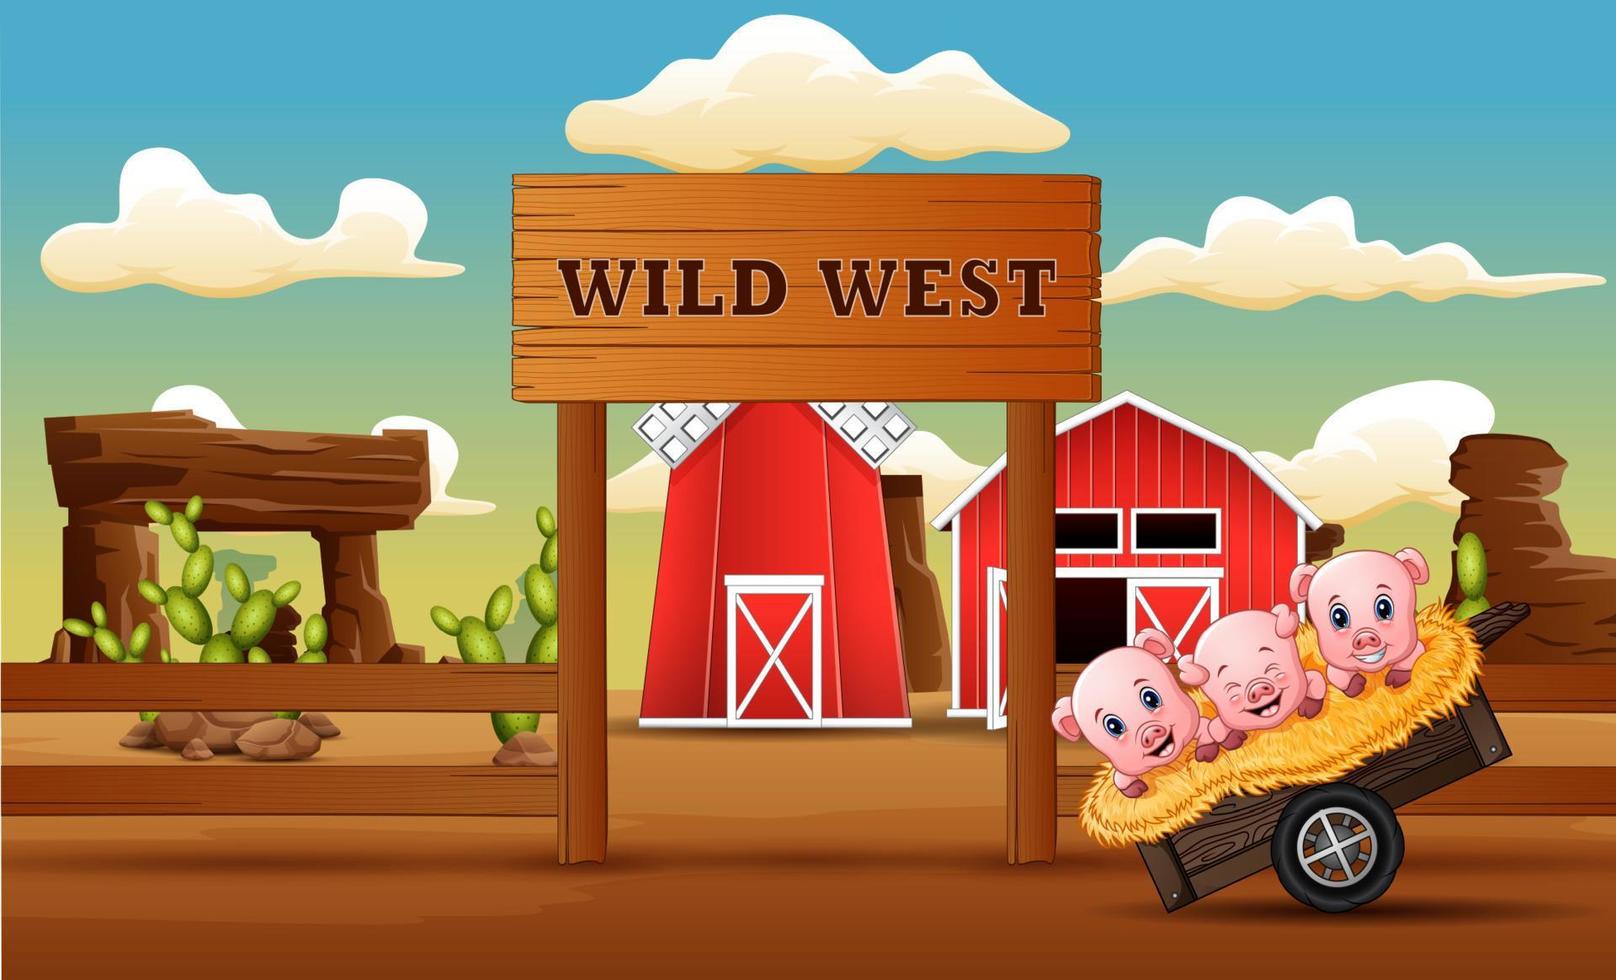 dibujos animados de cerdos frente a la puerta de una granja salvaje oeste vector